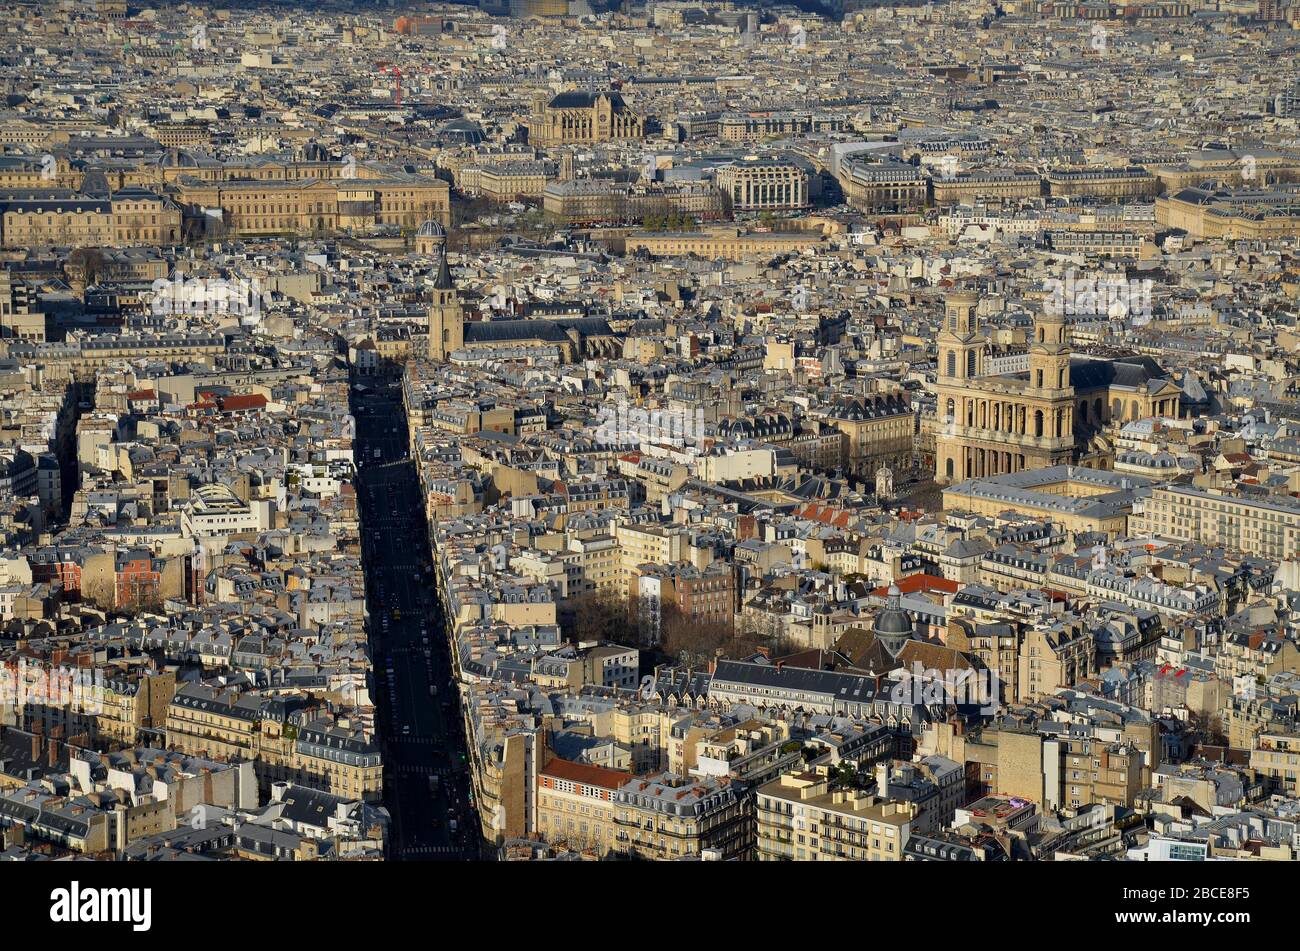 Parigi, die Hauptstadt Frankreichs: Blick vom Tour Montparnasse über die Stadt, Panorama Foto Stock